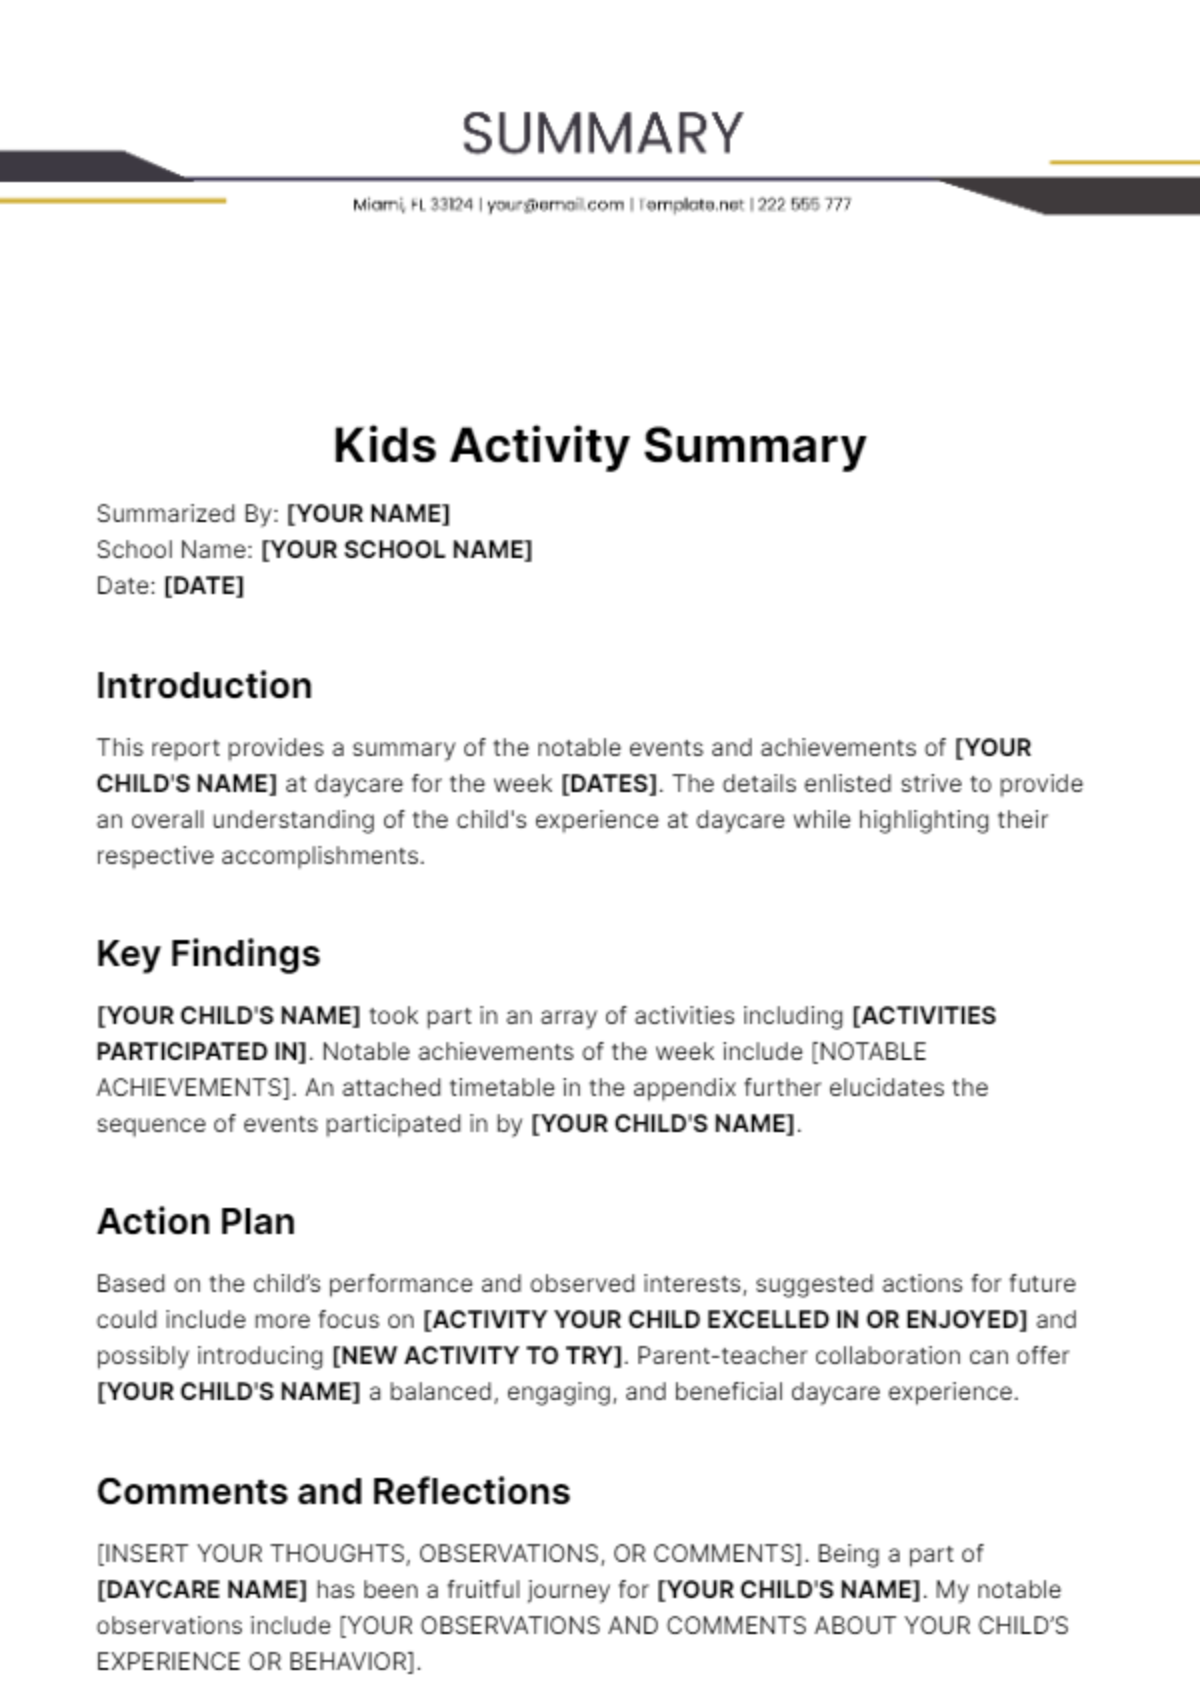 Kids Activity Summary Template